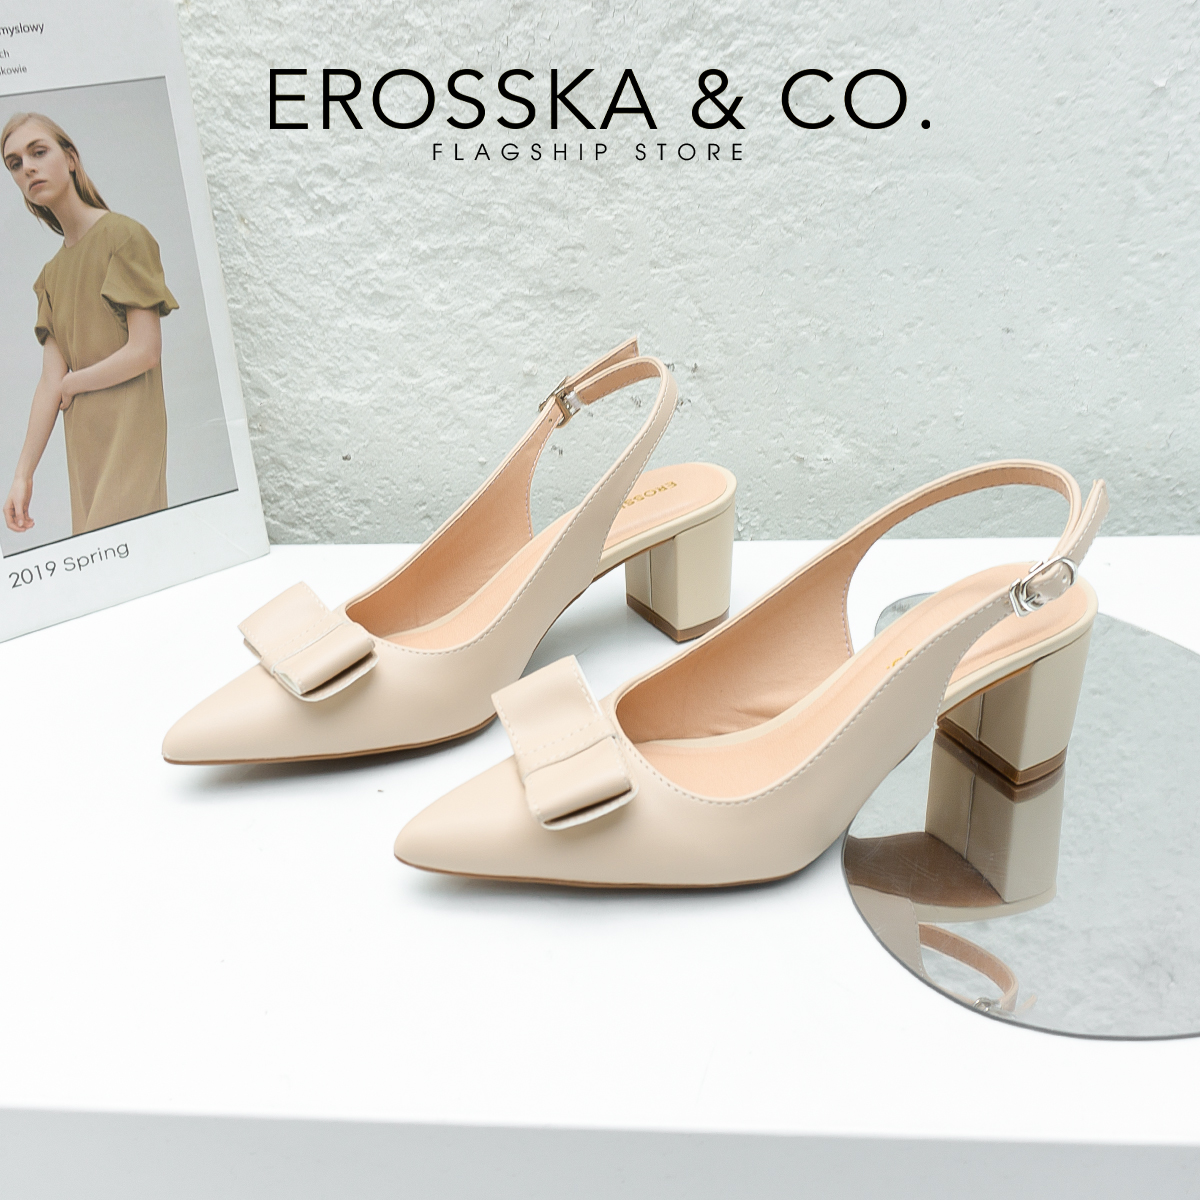 Erosska - Giày cao gót mũi nhọn phối quai đính nơ cao 5cm màu nude - EH034